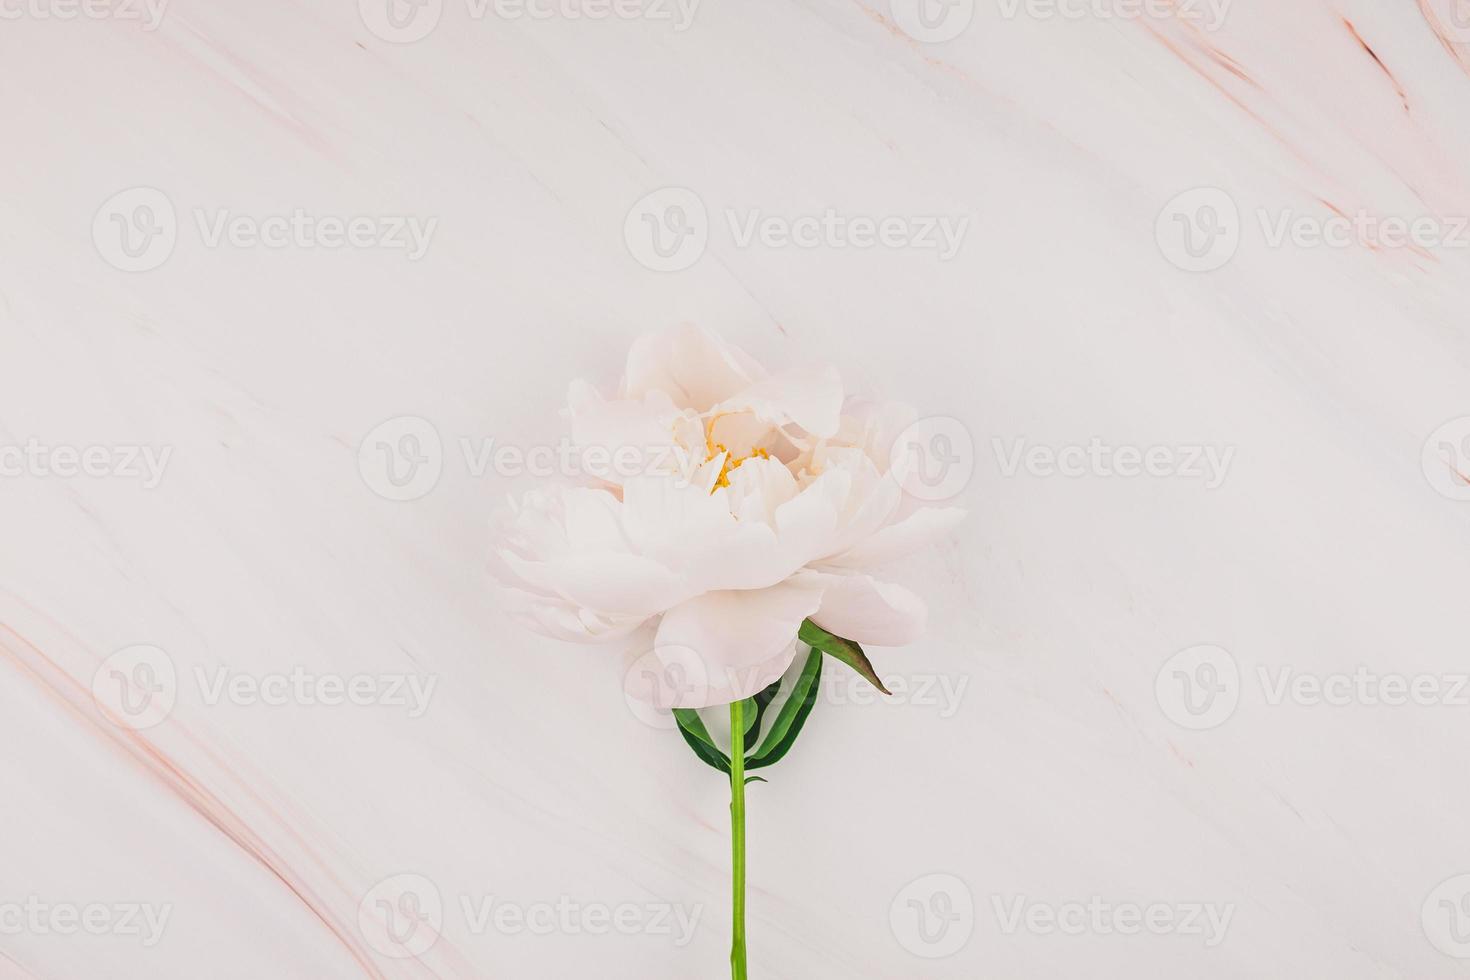 flores de peônia branca no fundo de mármore foto